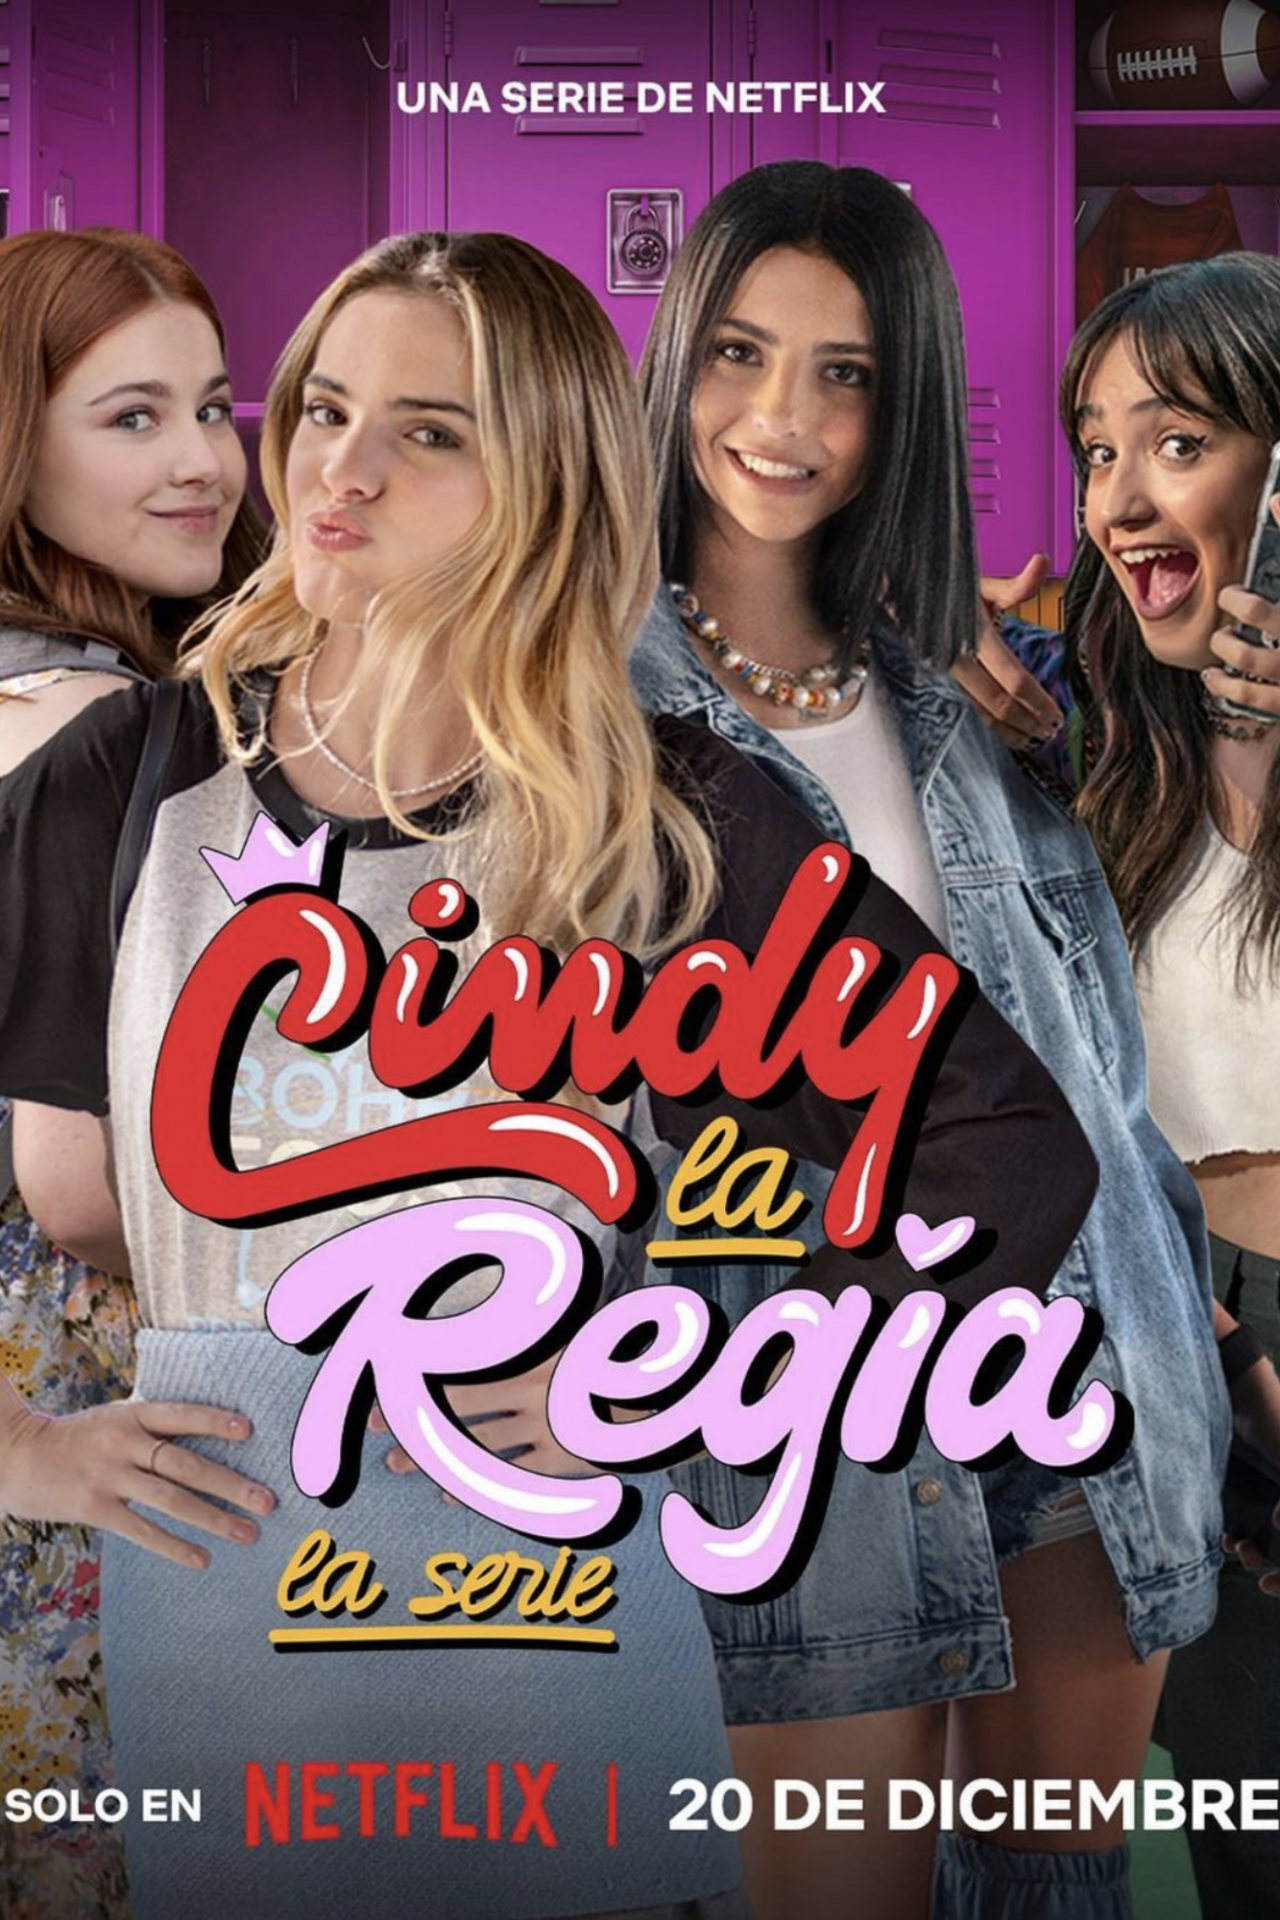 Cindy la Regia: La serie – 20 de diciembre (Netflix)